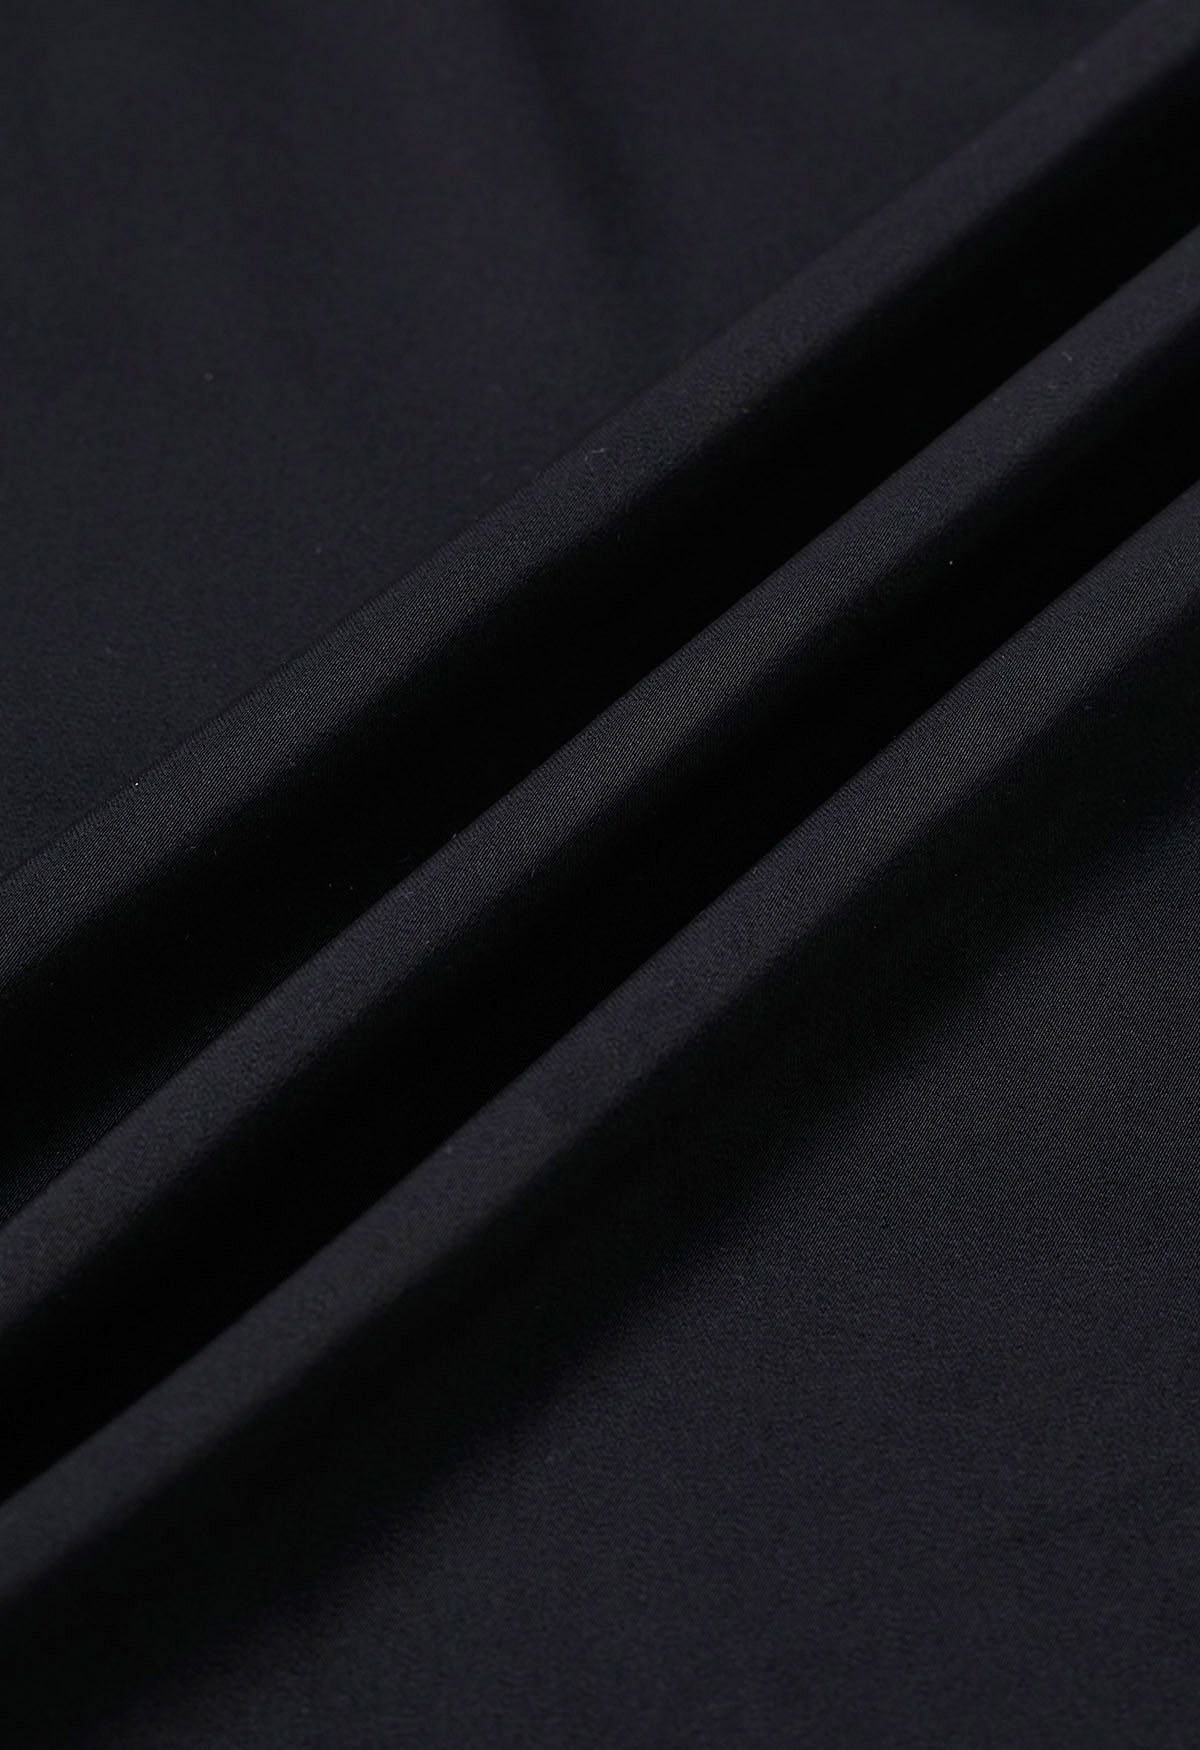 Cowl Neck Split Sleeves Satin Top in Black